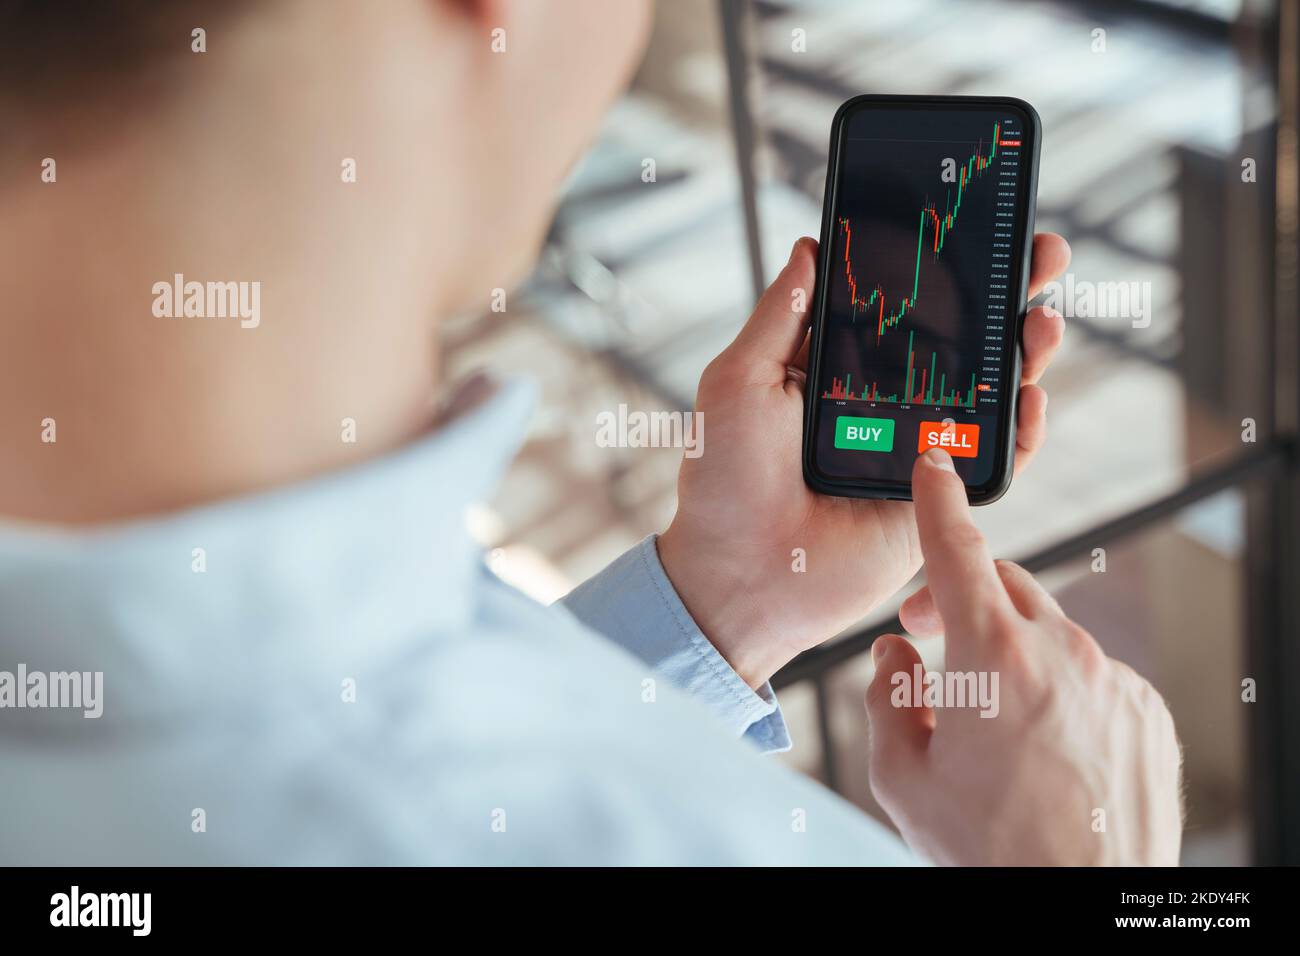 Nahaufnahme kein Gesichtsbild des Traders, der mit der Kryptowährungs-App die Sell-Taste auf dem Smartphone drücken wird, nachdem er die Börsenmarkt- oder Kryptowährungsdaten analysiert und das Smartphone in den Händen gehalten hat Stockfoto